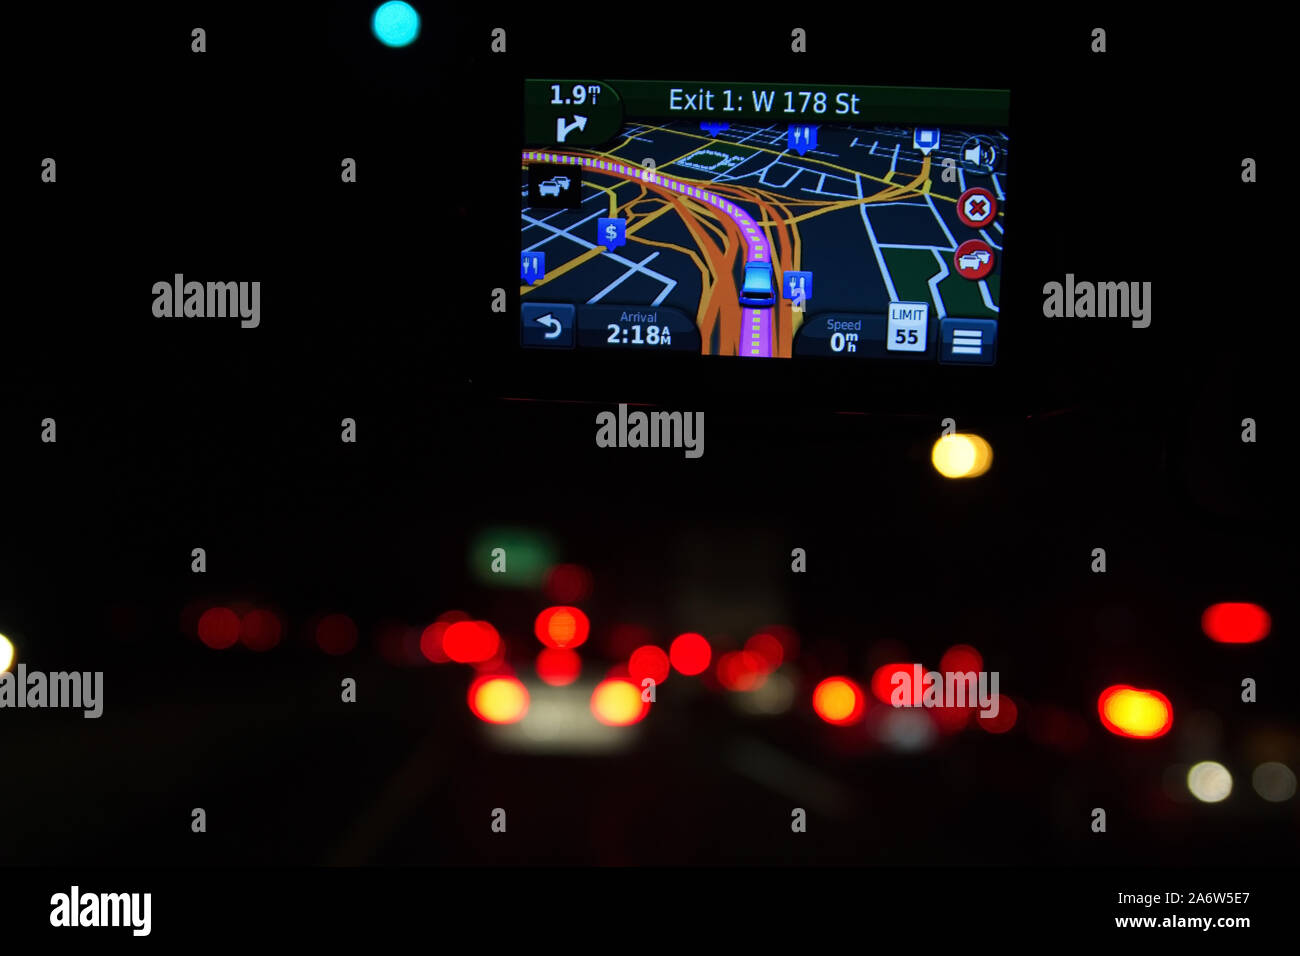 New York, NY, USA. 5. August 2014. Fenster auf GPS bei Nacht Führung Reisende mit Unterbringung, Essen und andere nützliche stoppt. Stockfoto